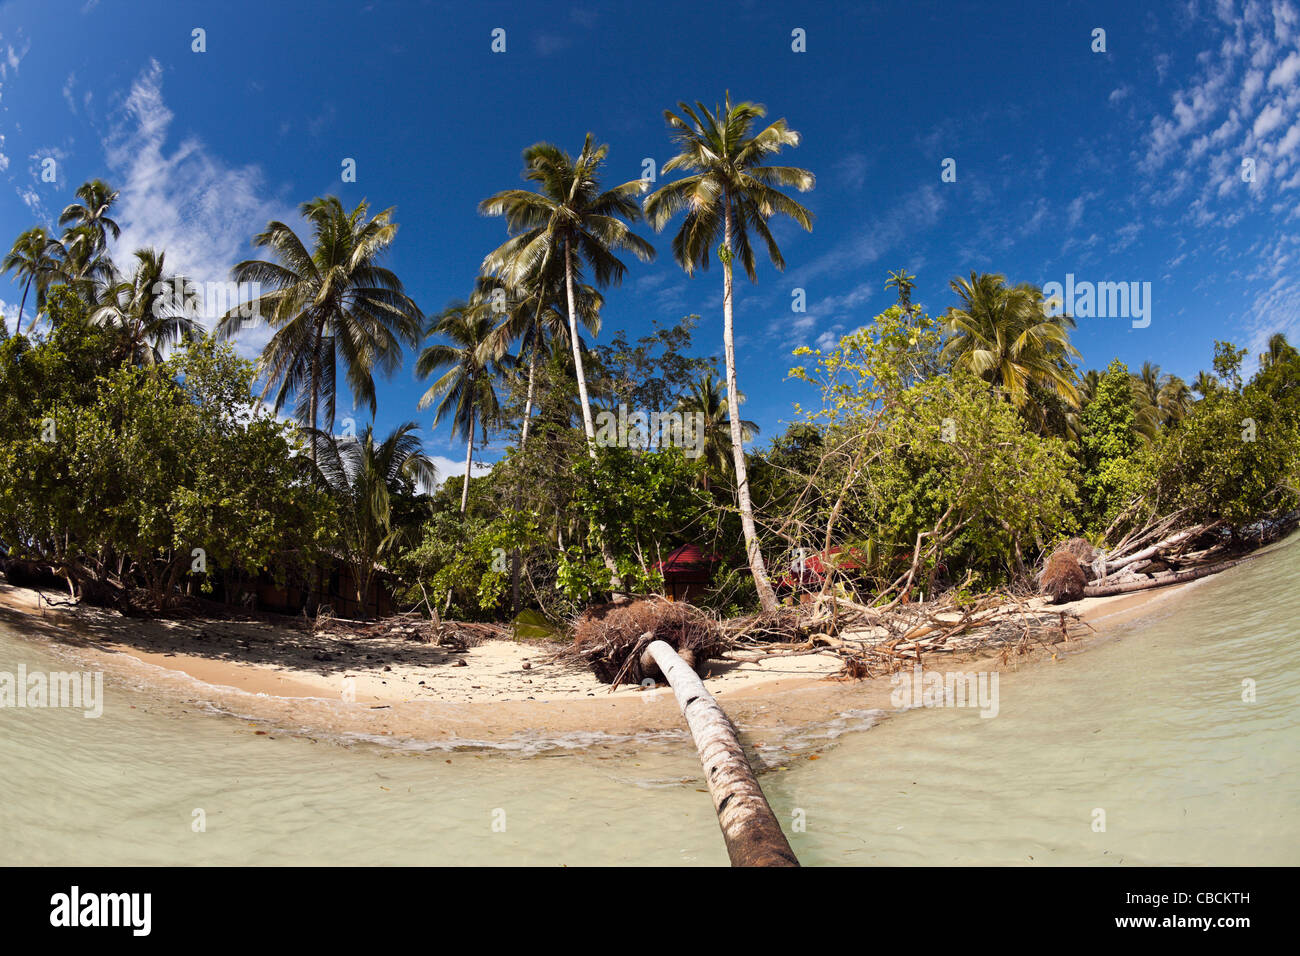 Impressions de Ahe, île de Cenderawasih Bay, en Papouasie occidentale, en Indonésie Banque D'Images